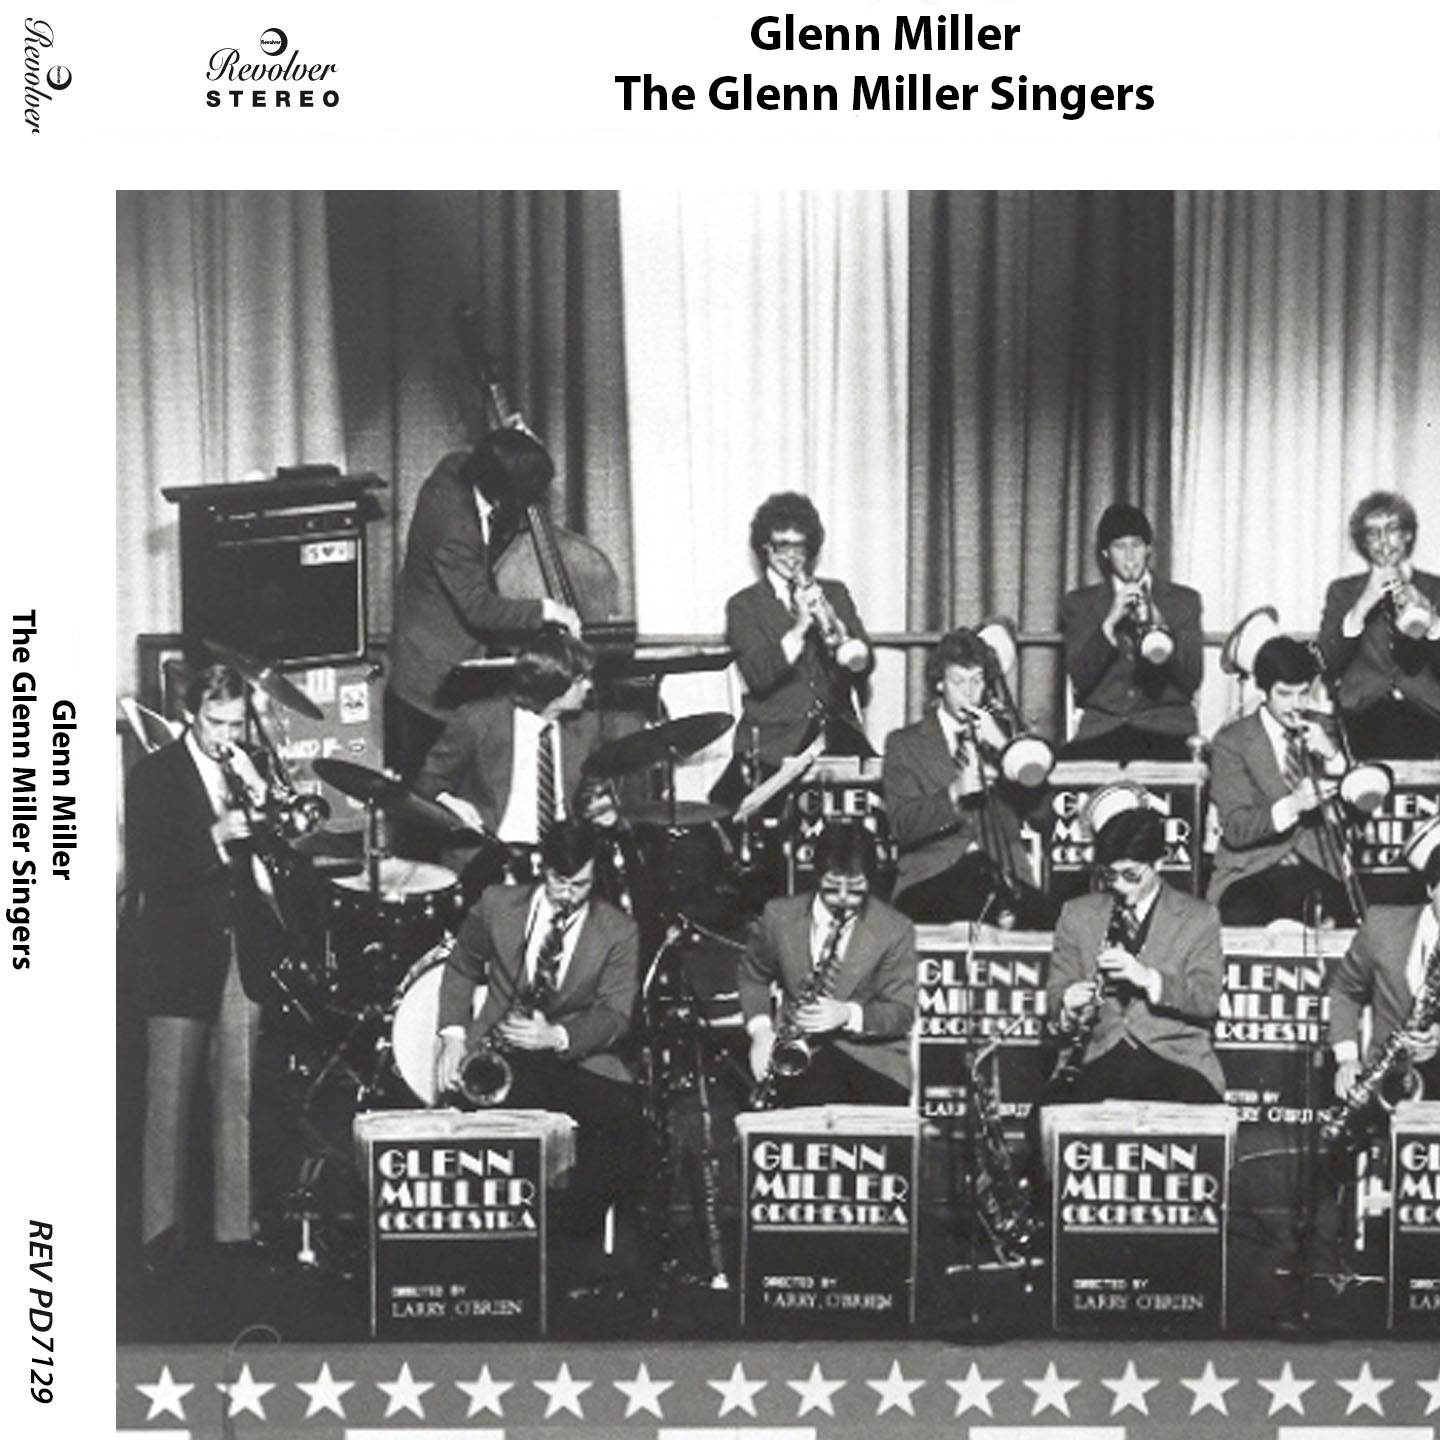 The Glenn Miller Singers